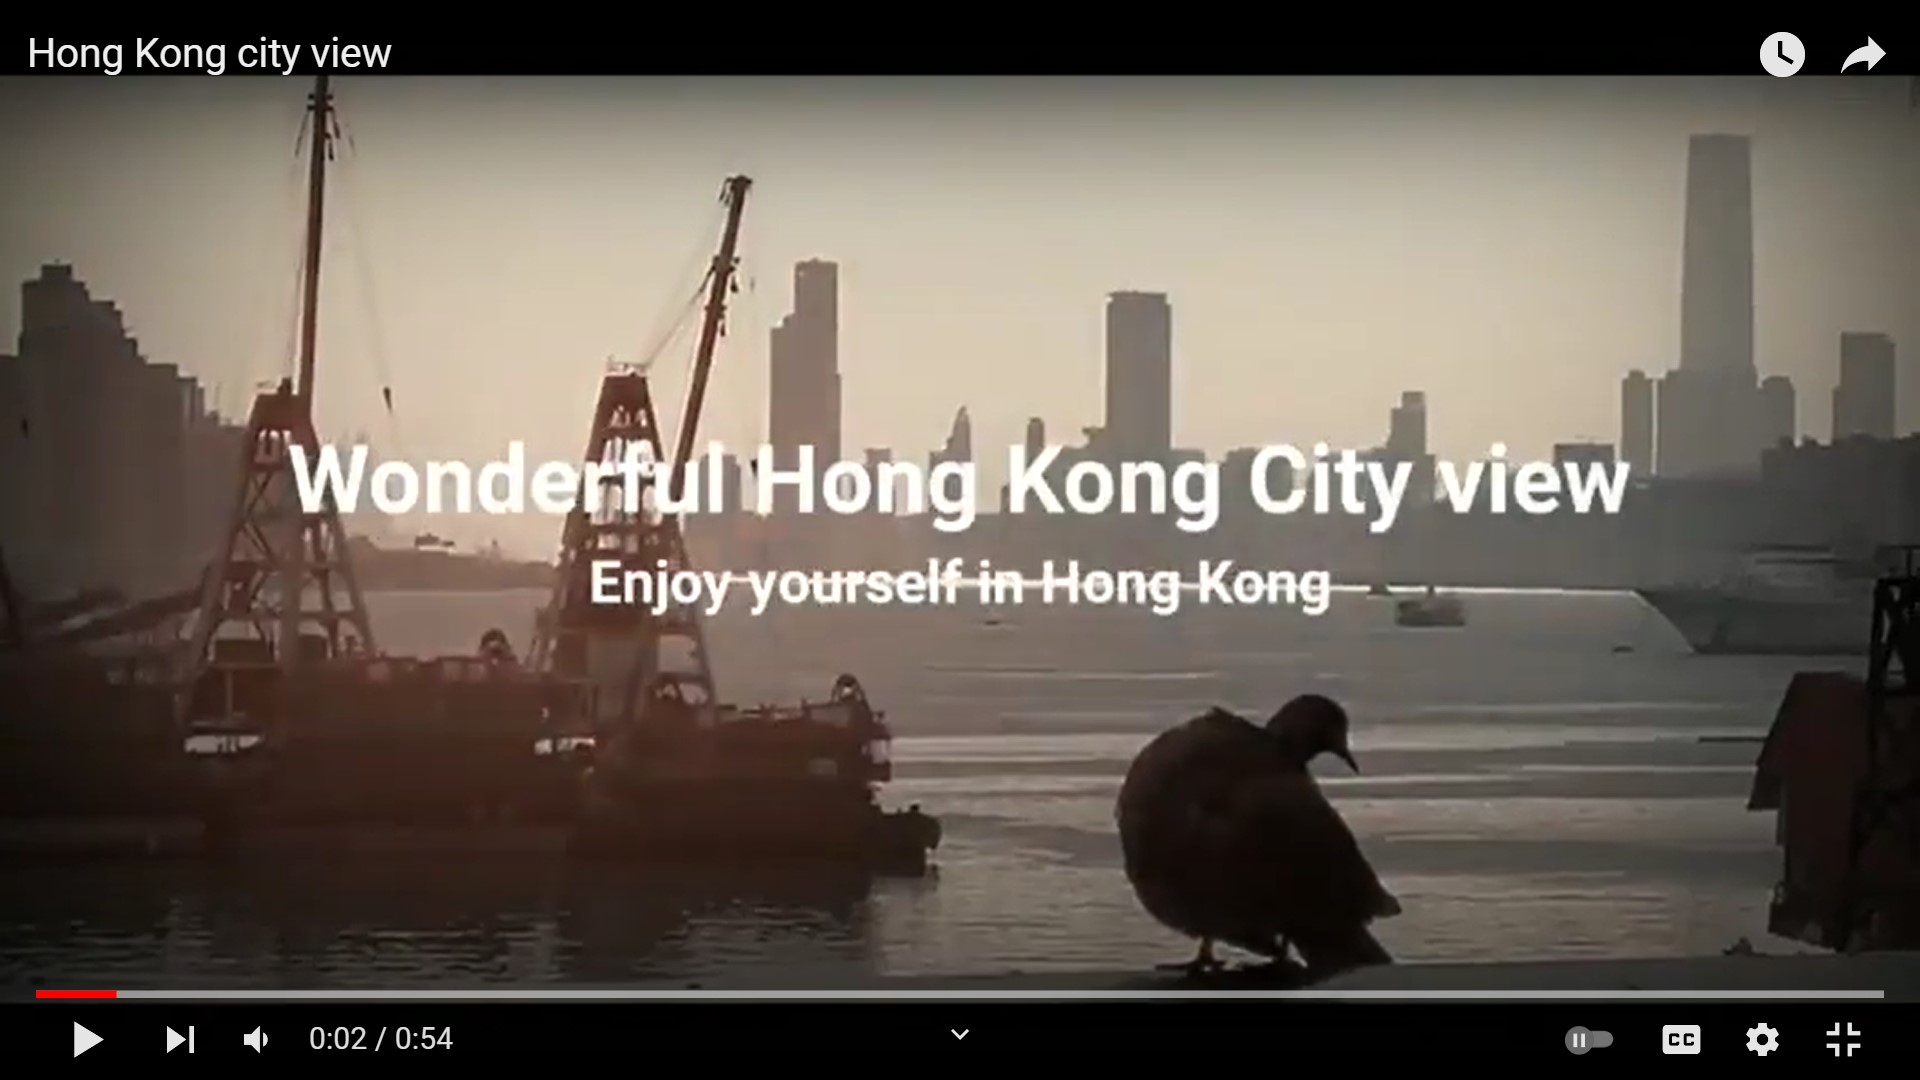 Frank’s “Hong Kong city view” snapshots video